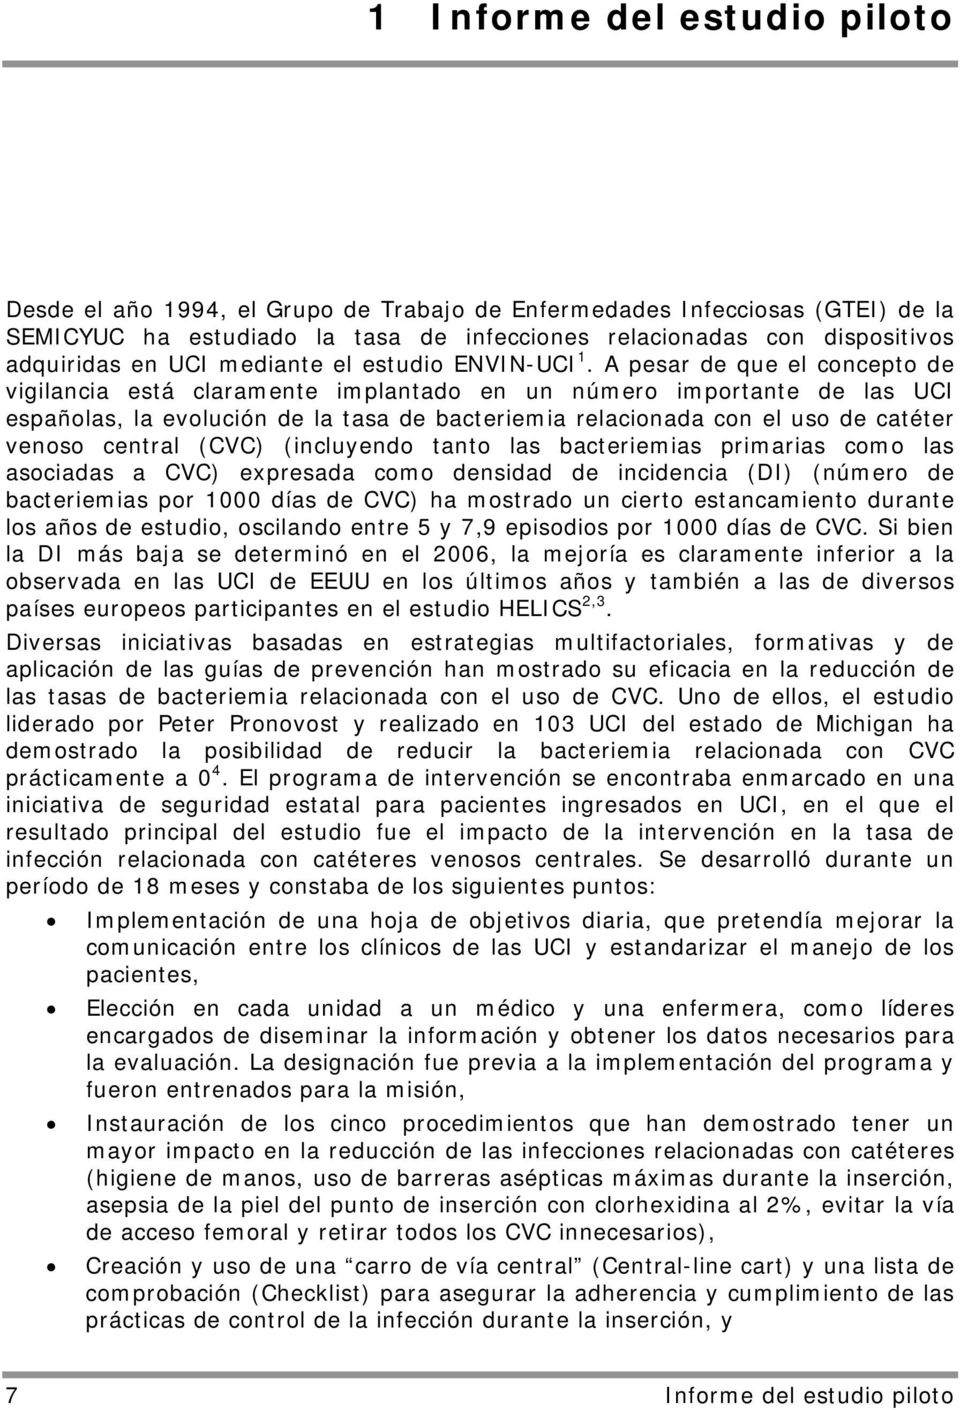 A pesar de que el concepto de vigilancia está claramente implantado en un número importante de las UCI españolas, la evolución de la tasa de bacteriemia relacionada con el uso de catéter venoso